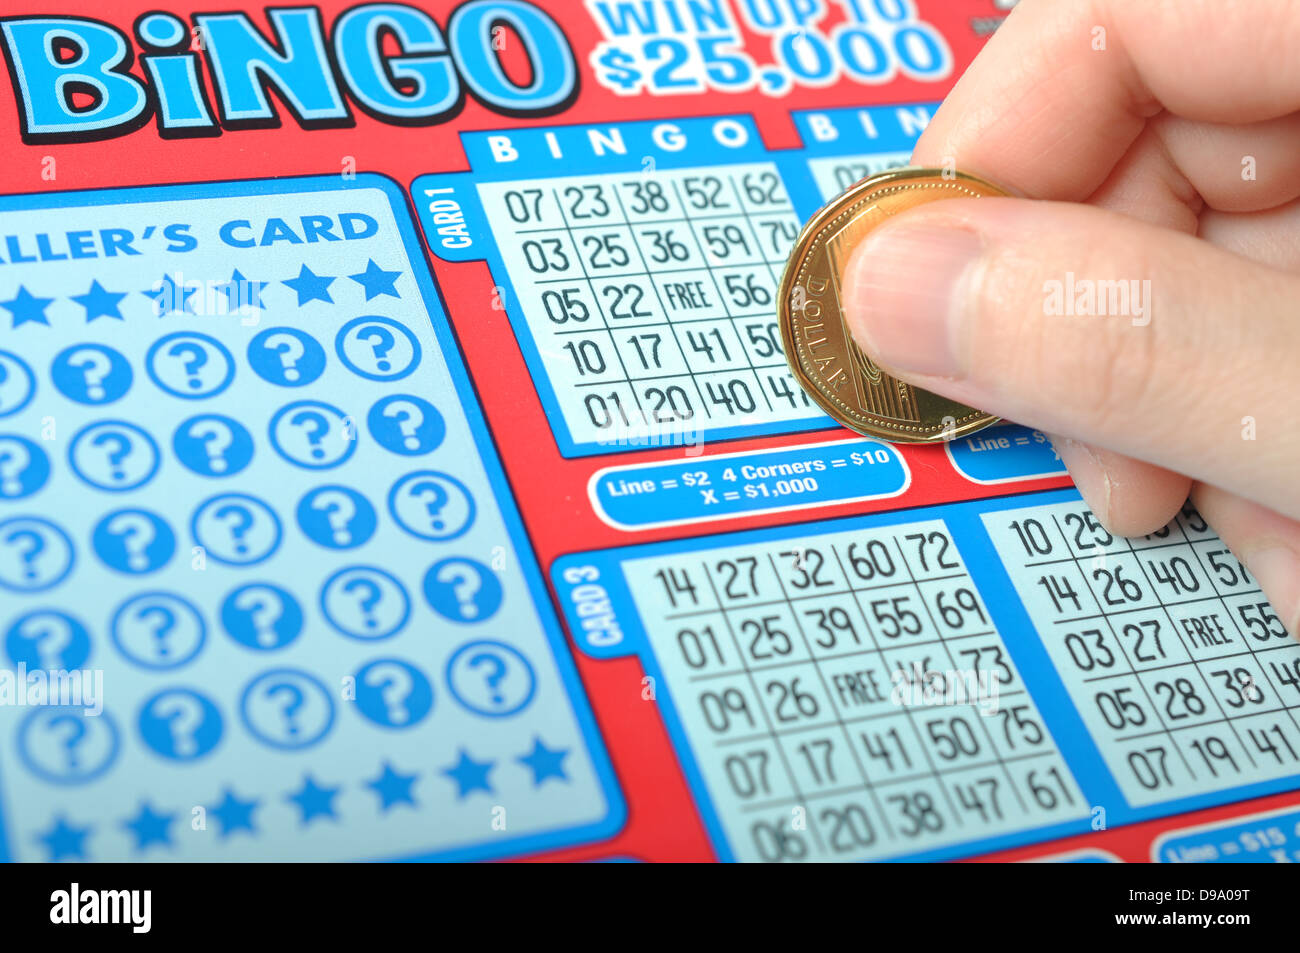 Une main humaine se gratte un billet de loterie Banque D'Images